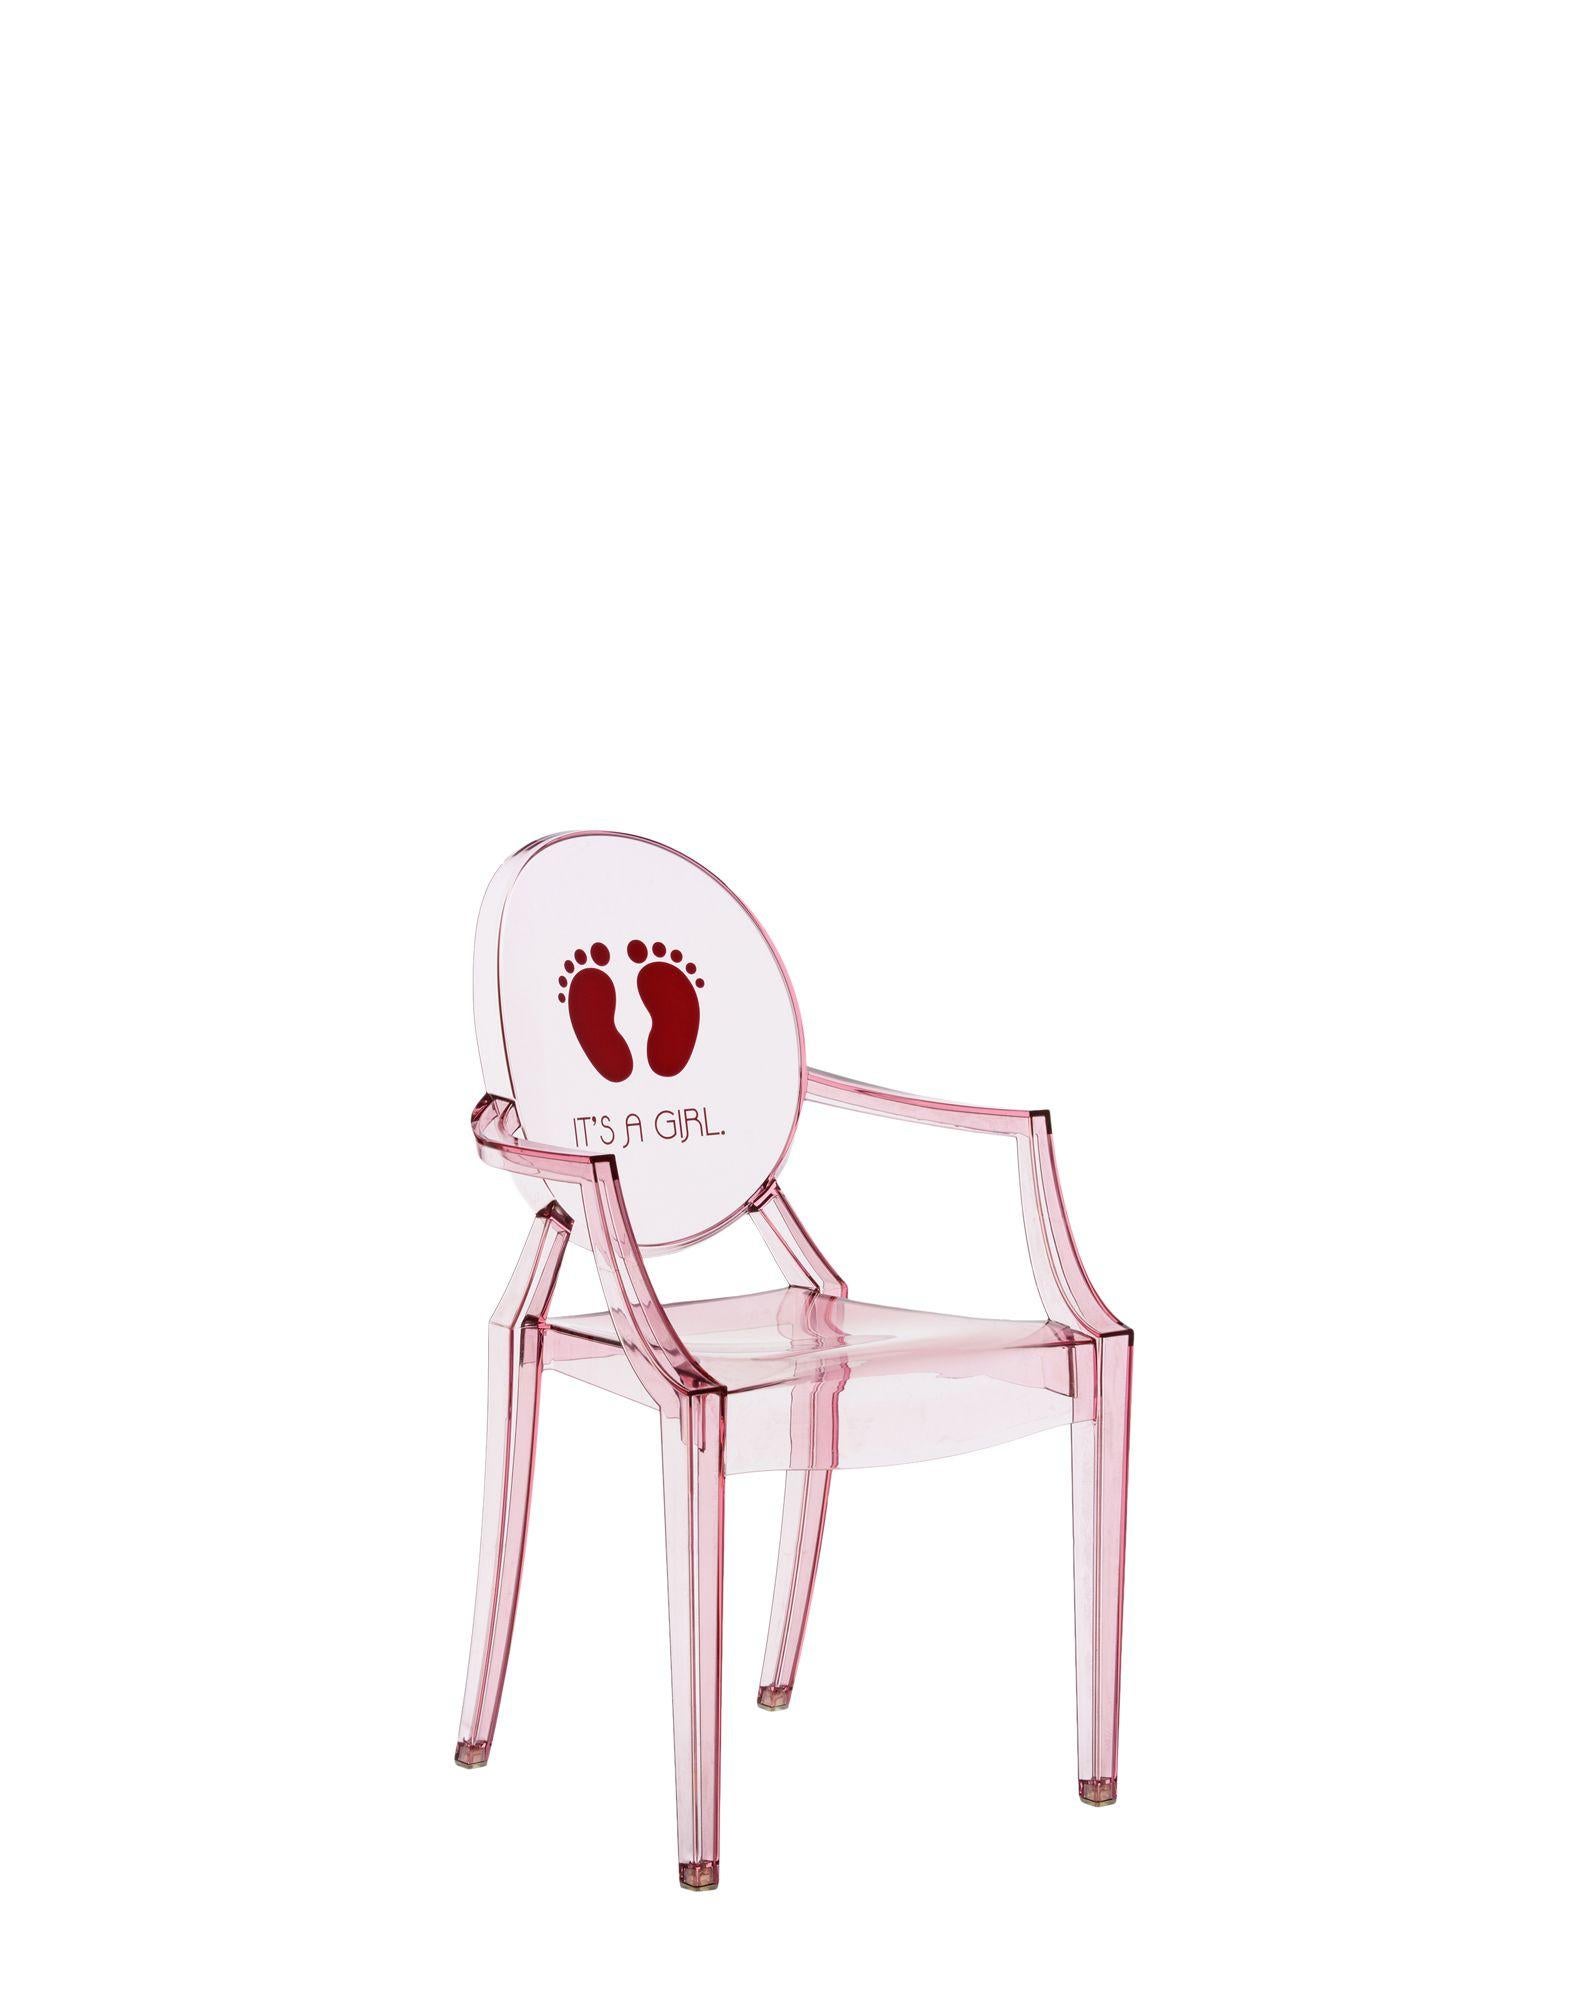 Die Miniaturversion eines der berühmtesten Designstühle ergänzt die Linie Kartell Kids in mehreren neuen Versionen. Der Lou Lou Ghost von Philippe Starck erhält neue und anpassbare Grafiken für die lustige Welt der Kinder.

Abmessungen: Höhe 24,75